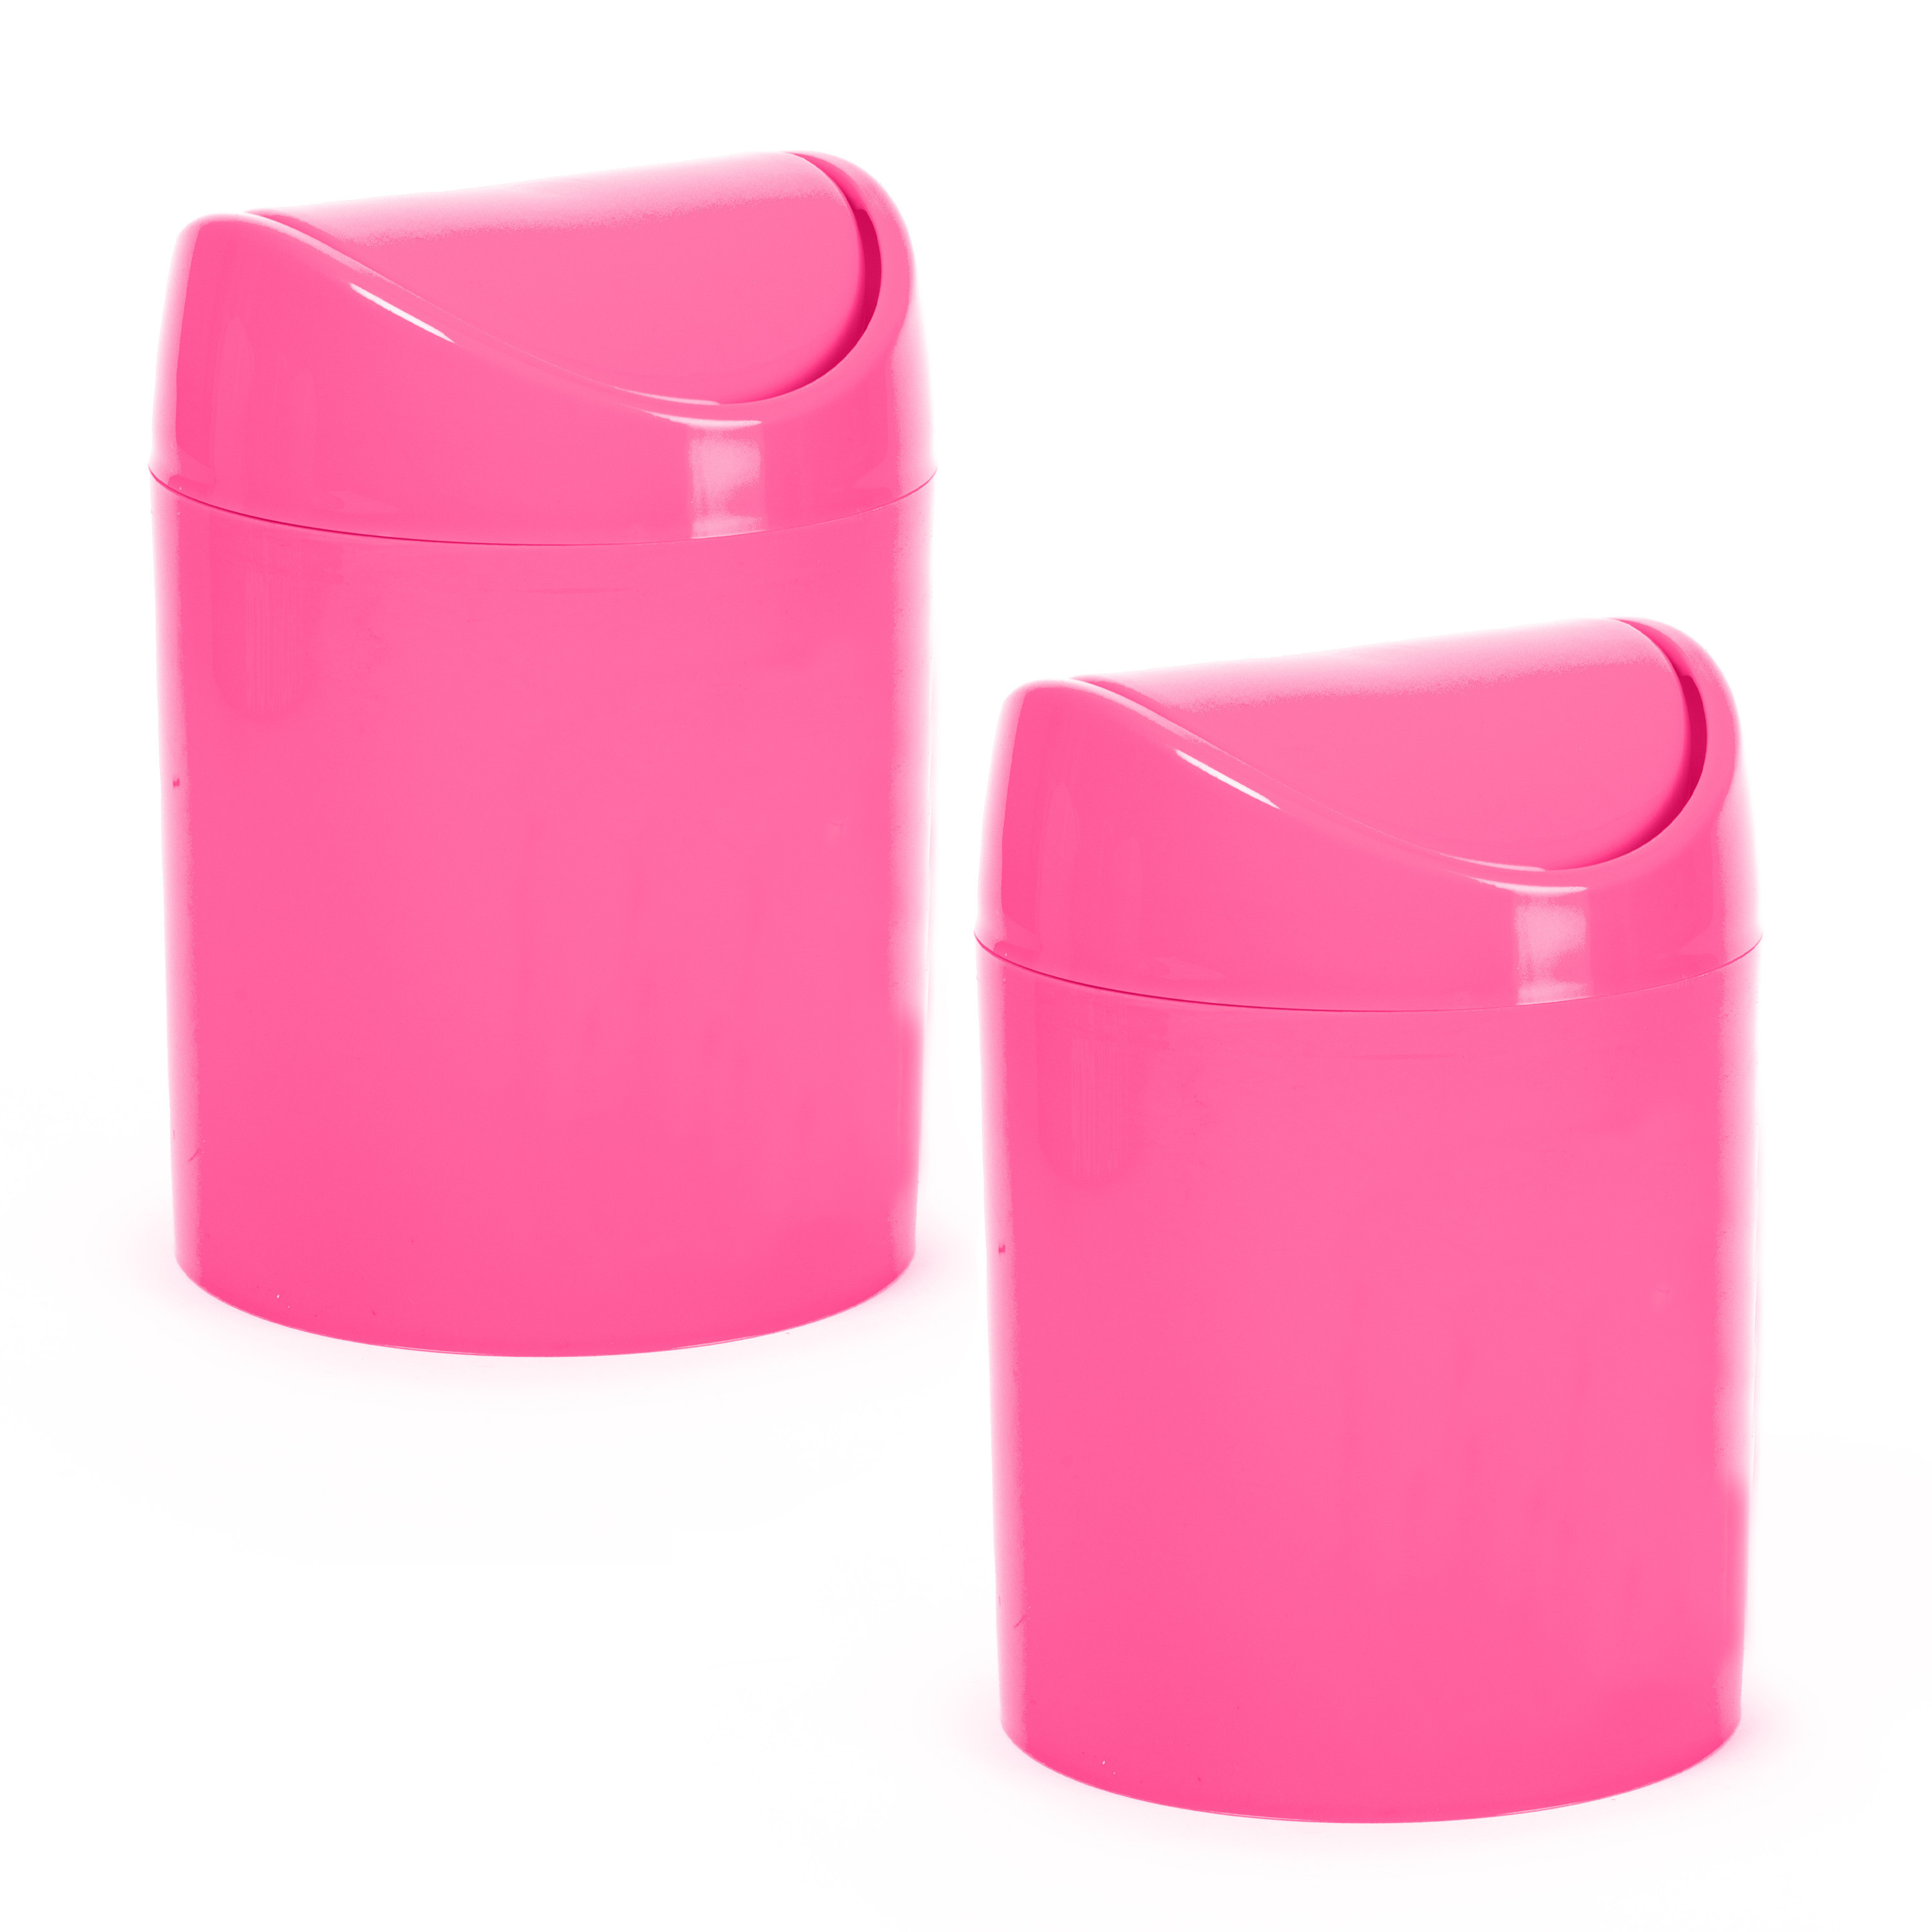 Mini prullenbakje 2x stuks fuchsia roze kunststof klepdeksel keuken aanrecht 12 x 17 cm